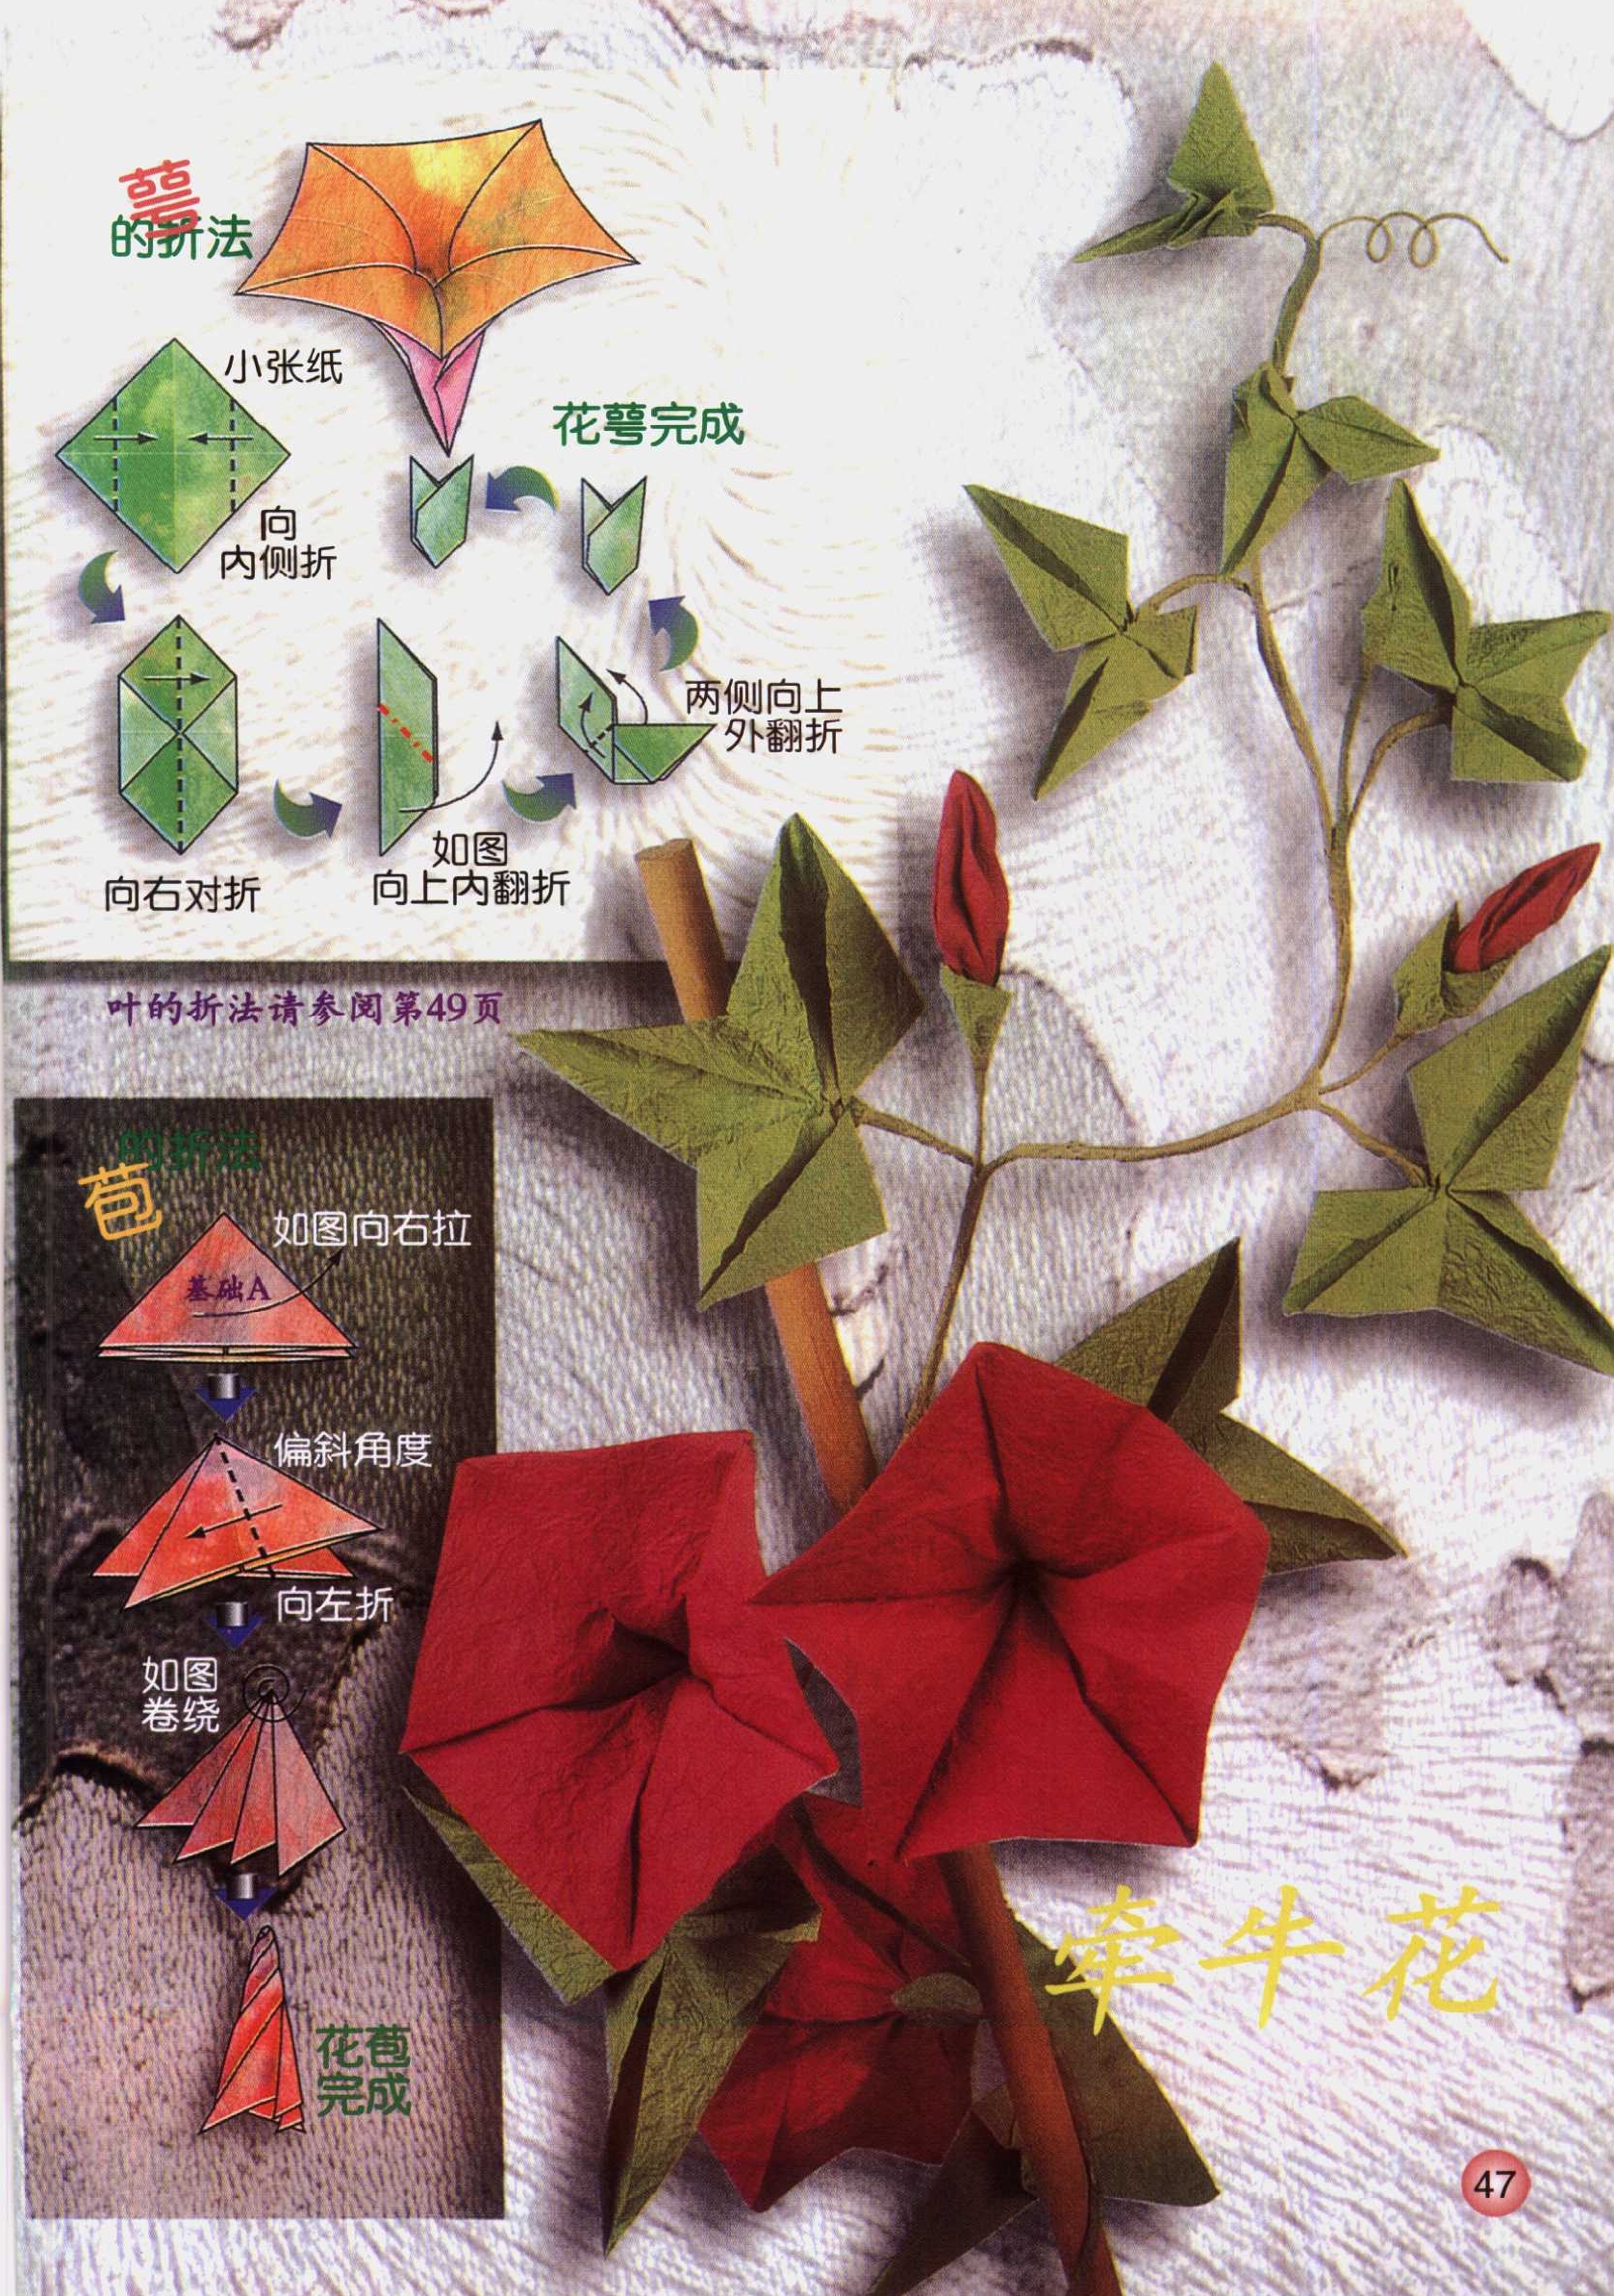 Origami - instrukcje - 47.jpg